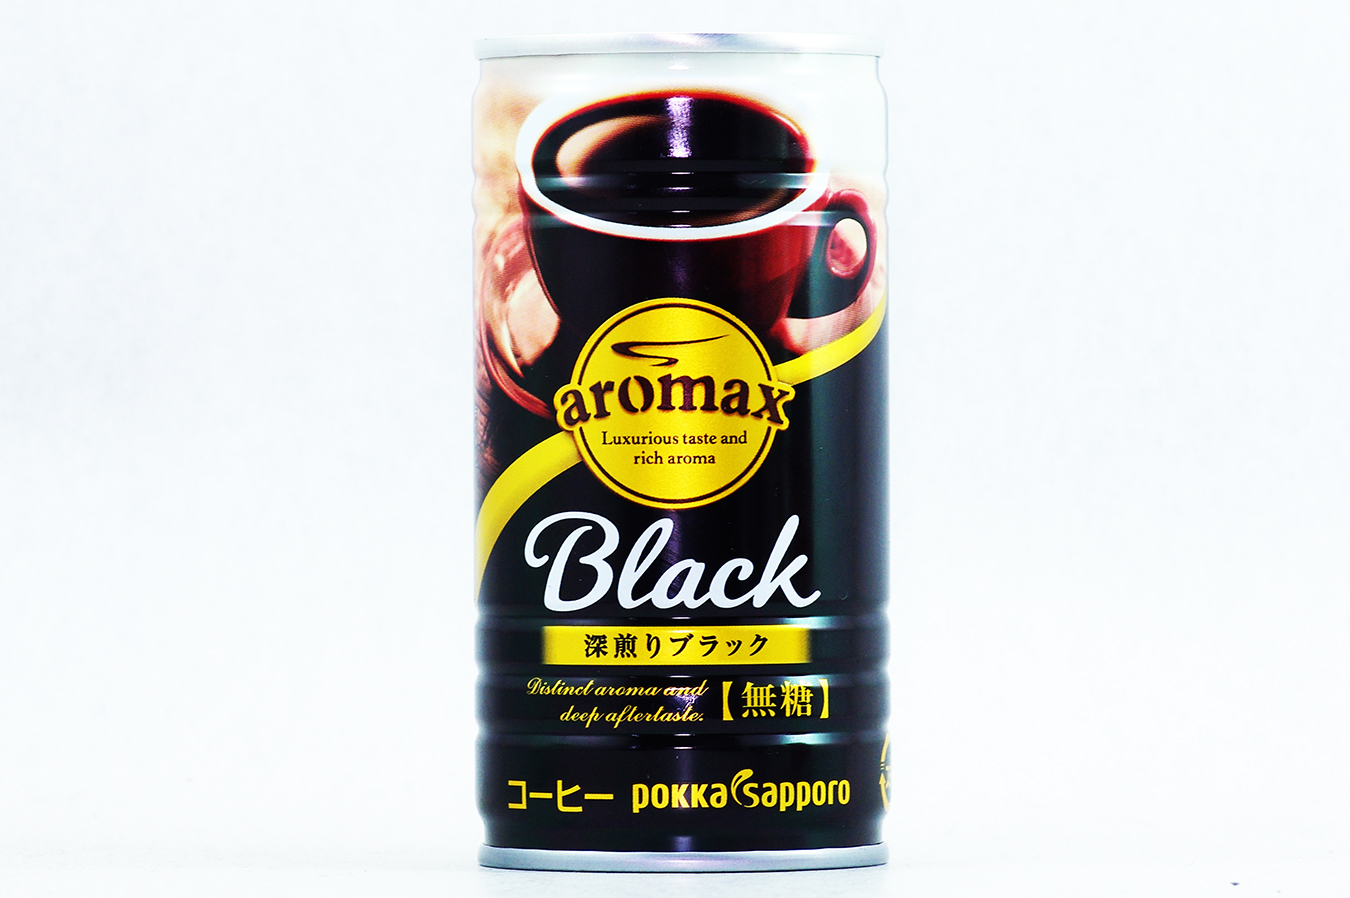 aromax ブラック 2018年3月